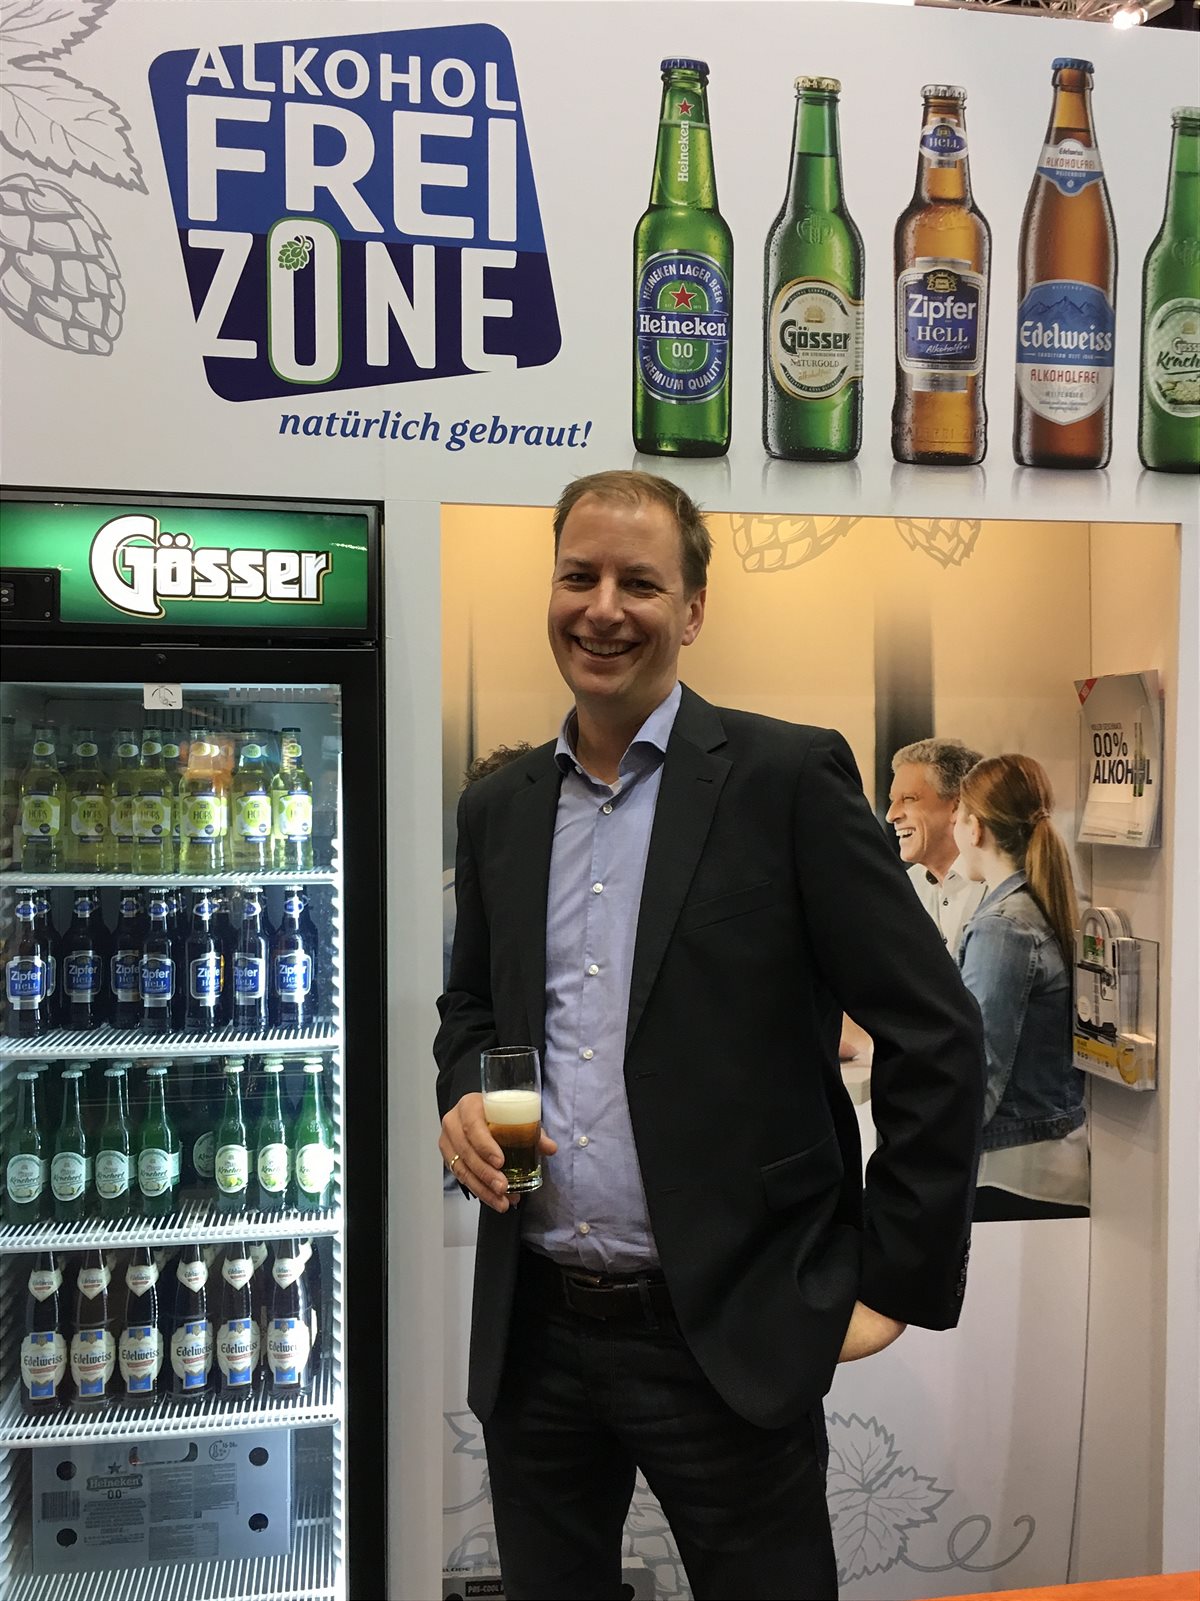 Magne Setnes, Vorstandsvorsitzender der Brau Union Österreich, sieht in alkoholfreien Bieren Wachstumspotenzial am Markt.